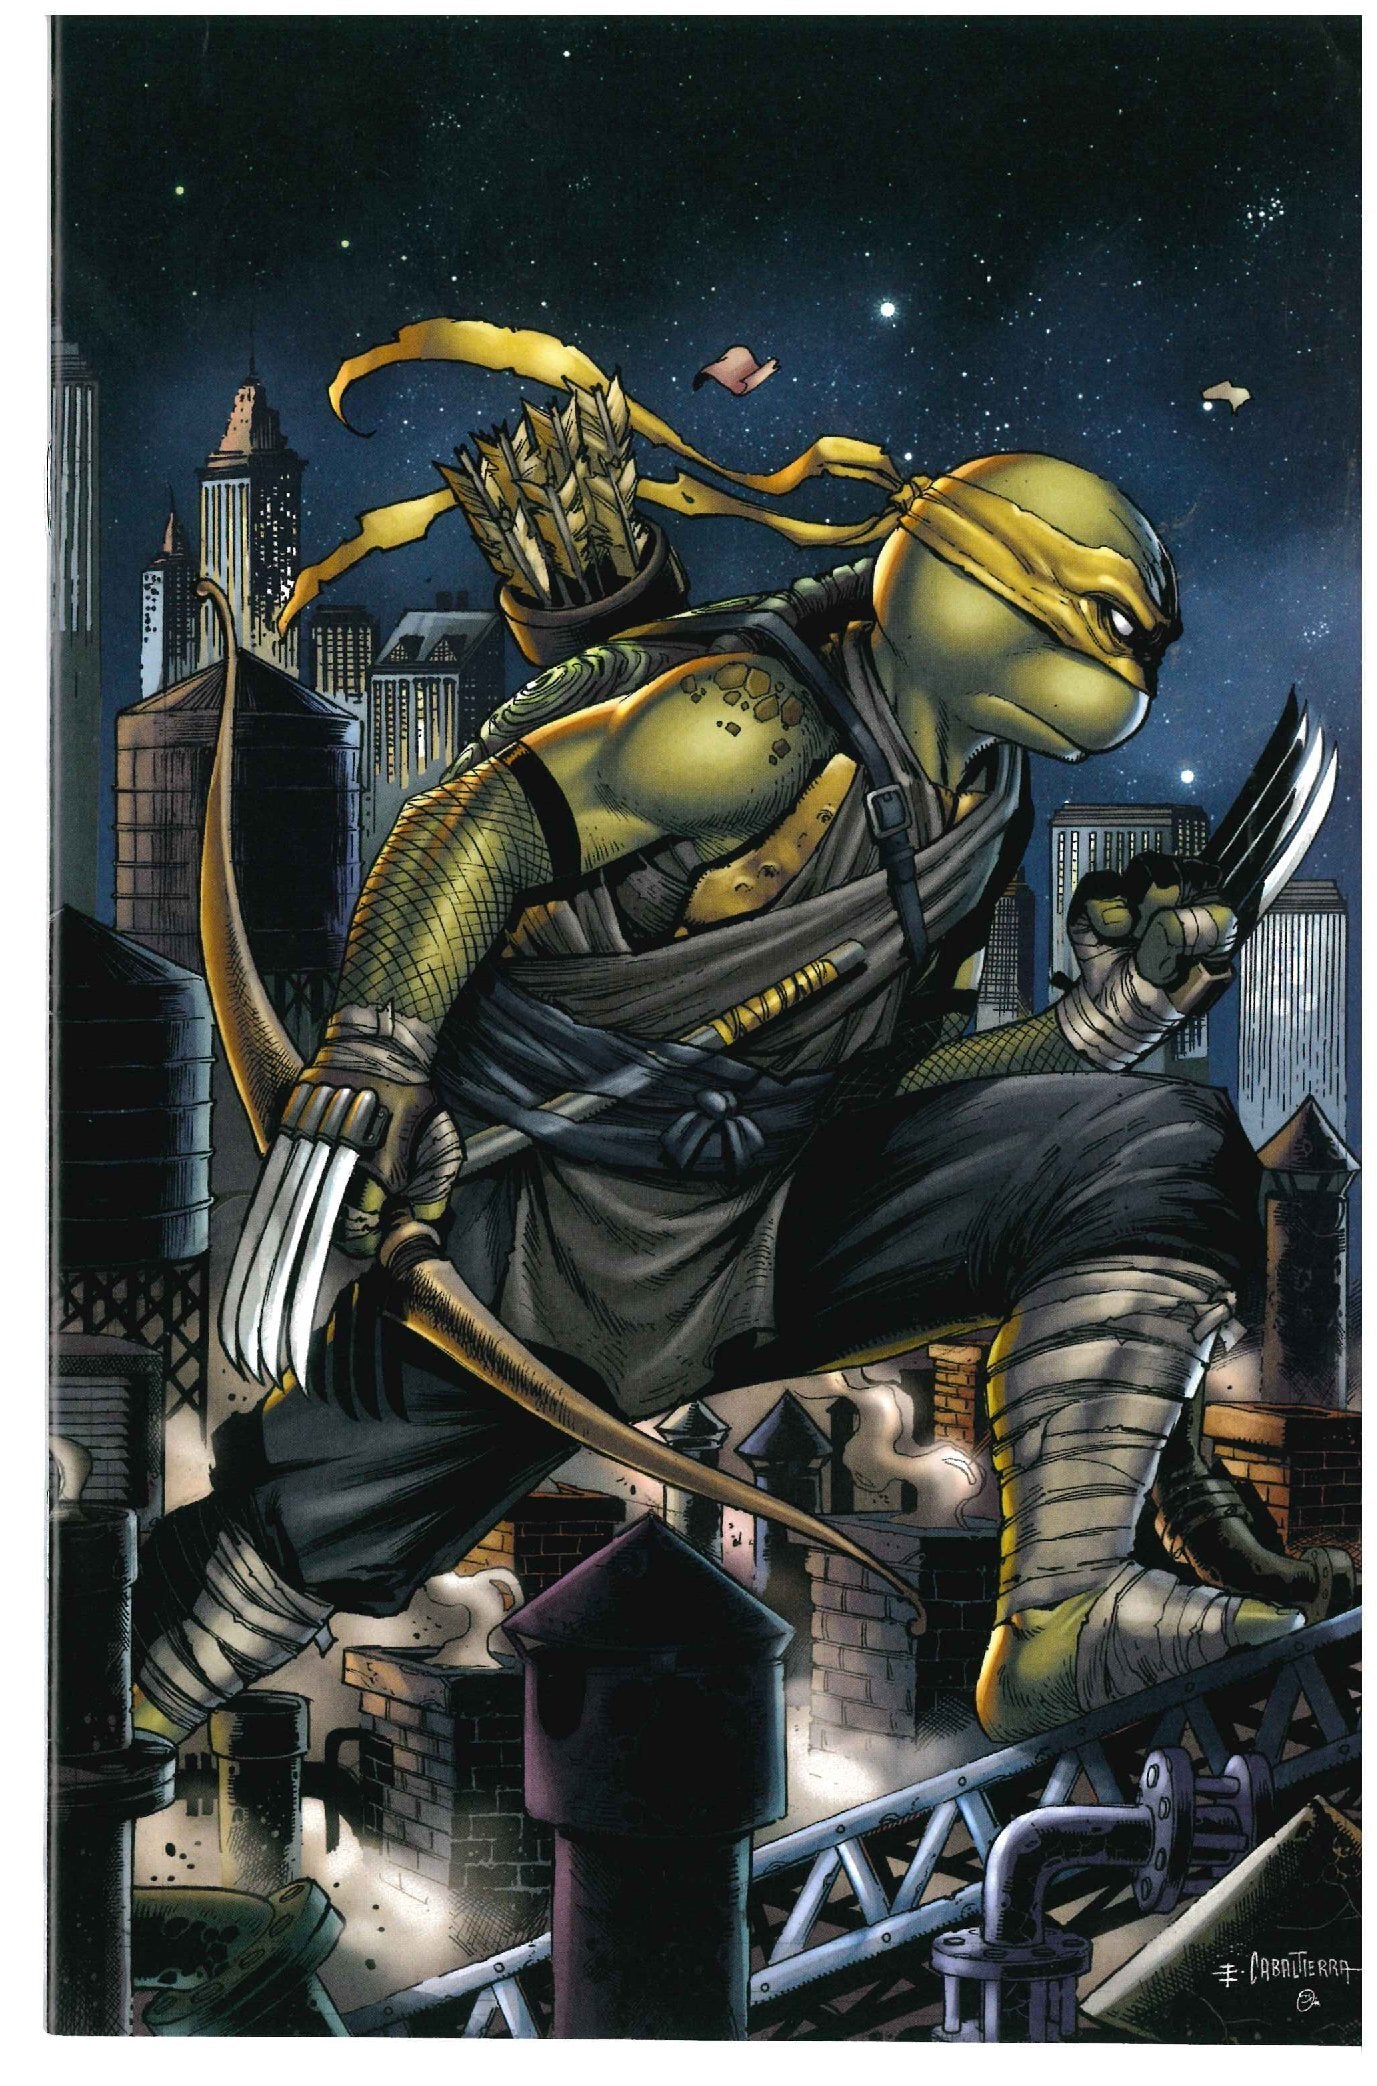 Teenage Mutant Ninja Turtles #5